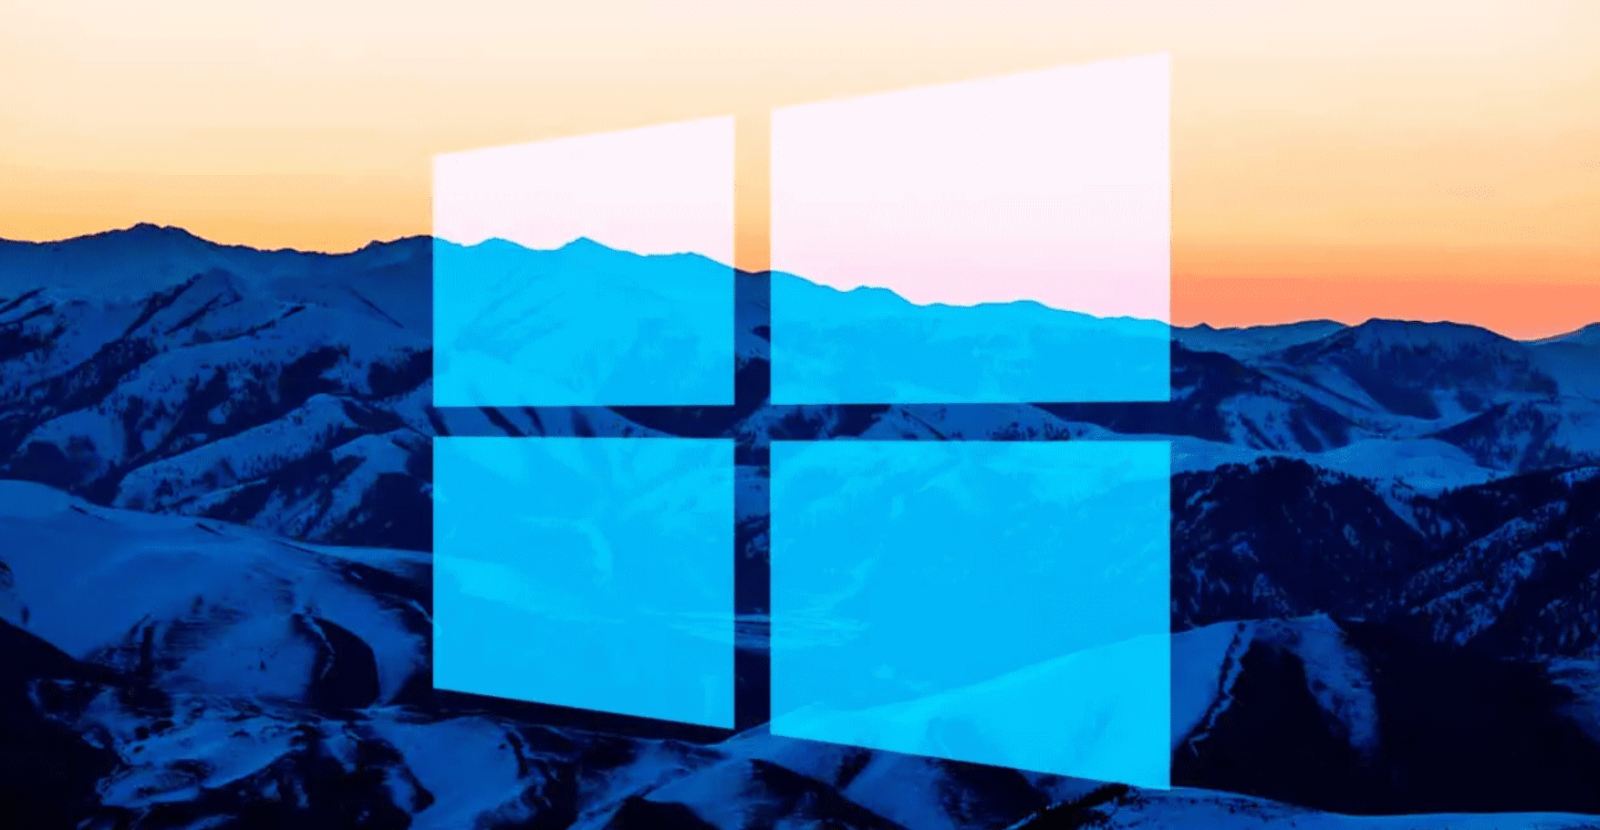 La actualización de septiembre trae problemas a Windows 10